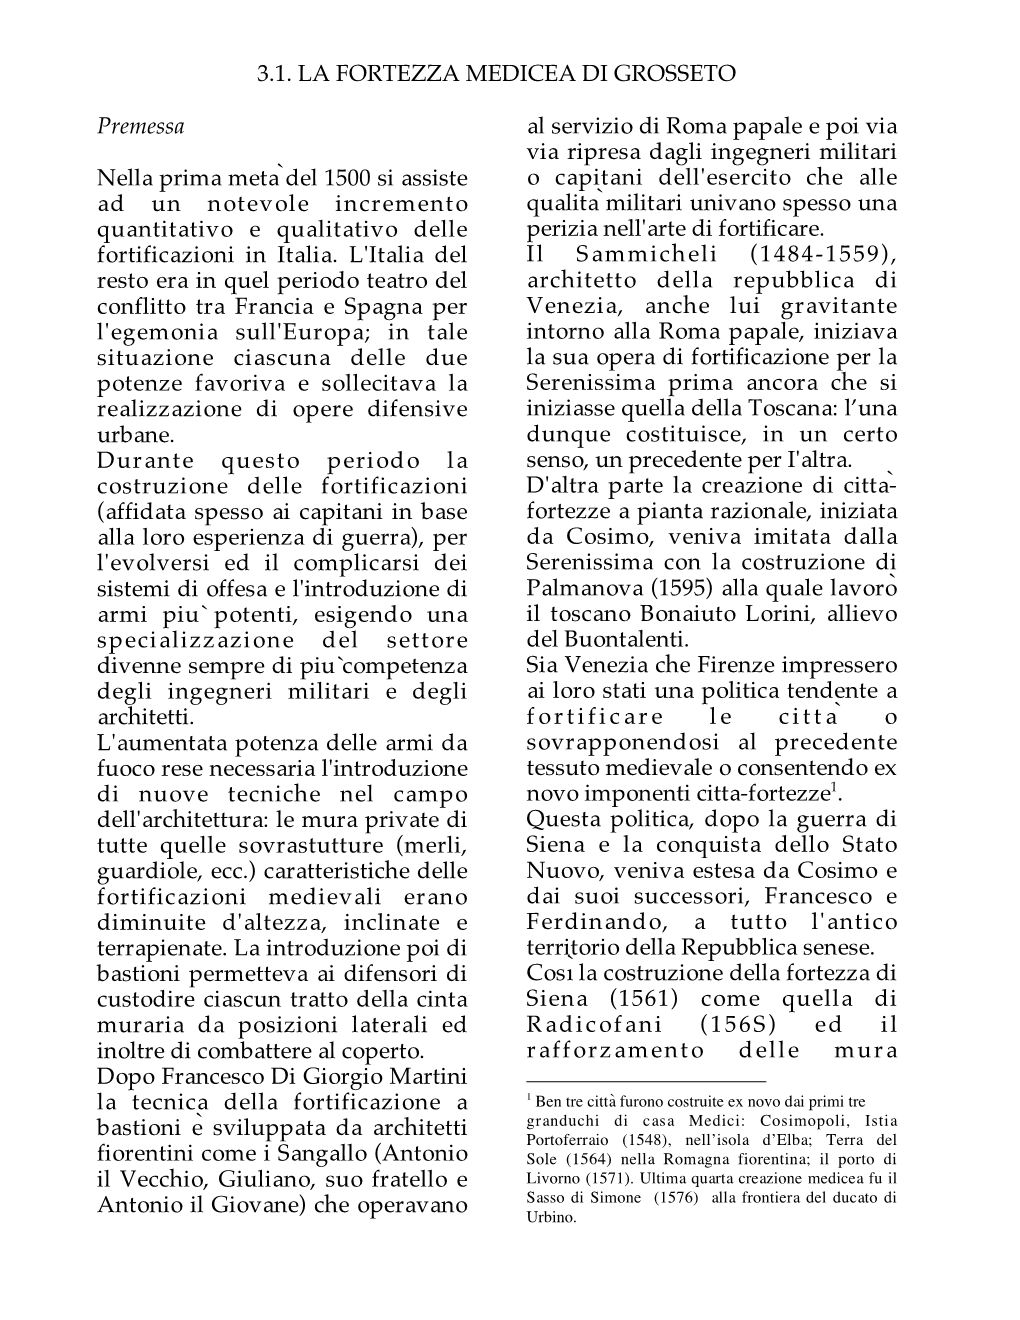 3.1. C. BORSARELLI, La Fortezza Medicea Di Grosseto, P. 19